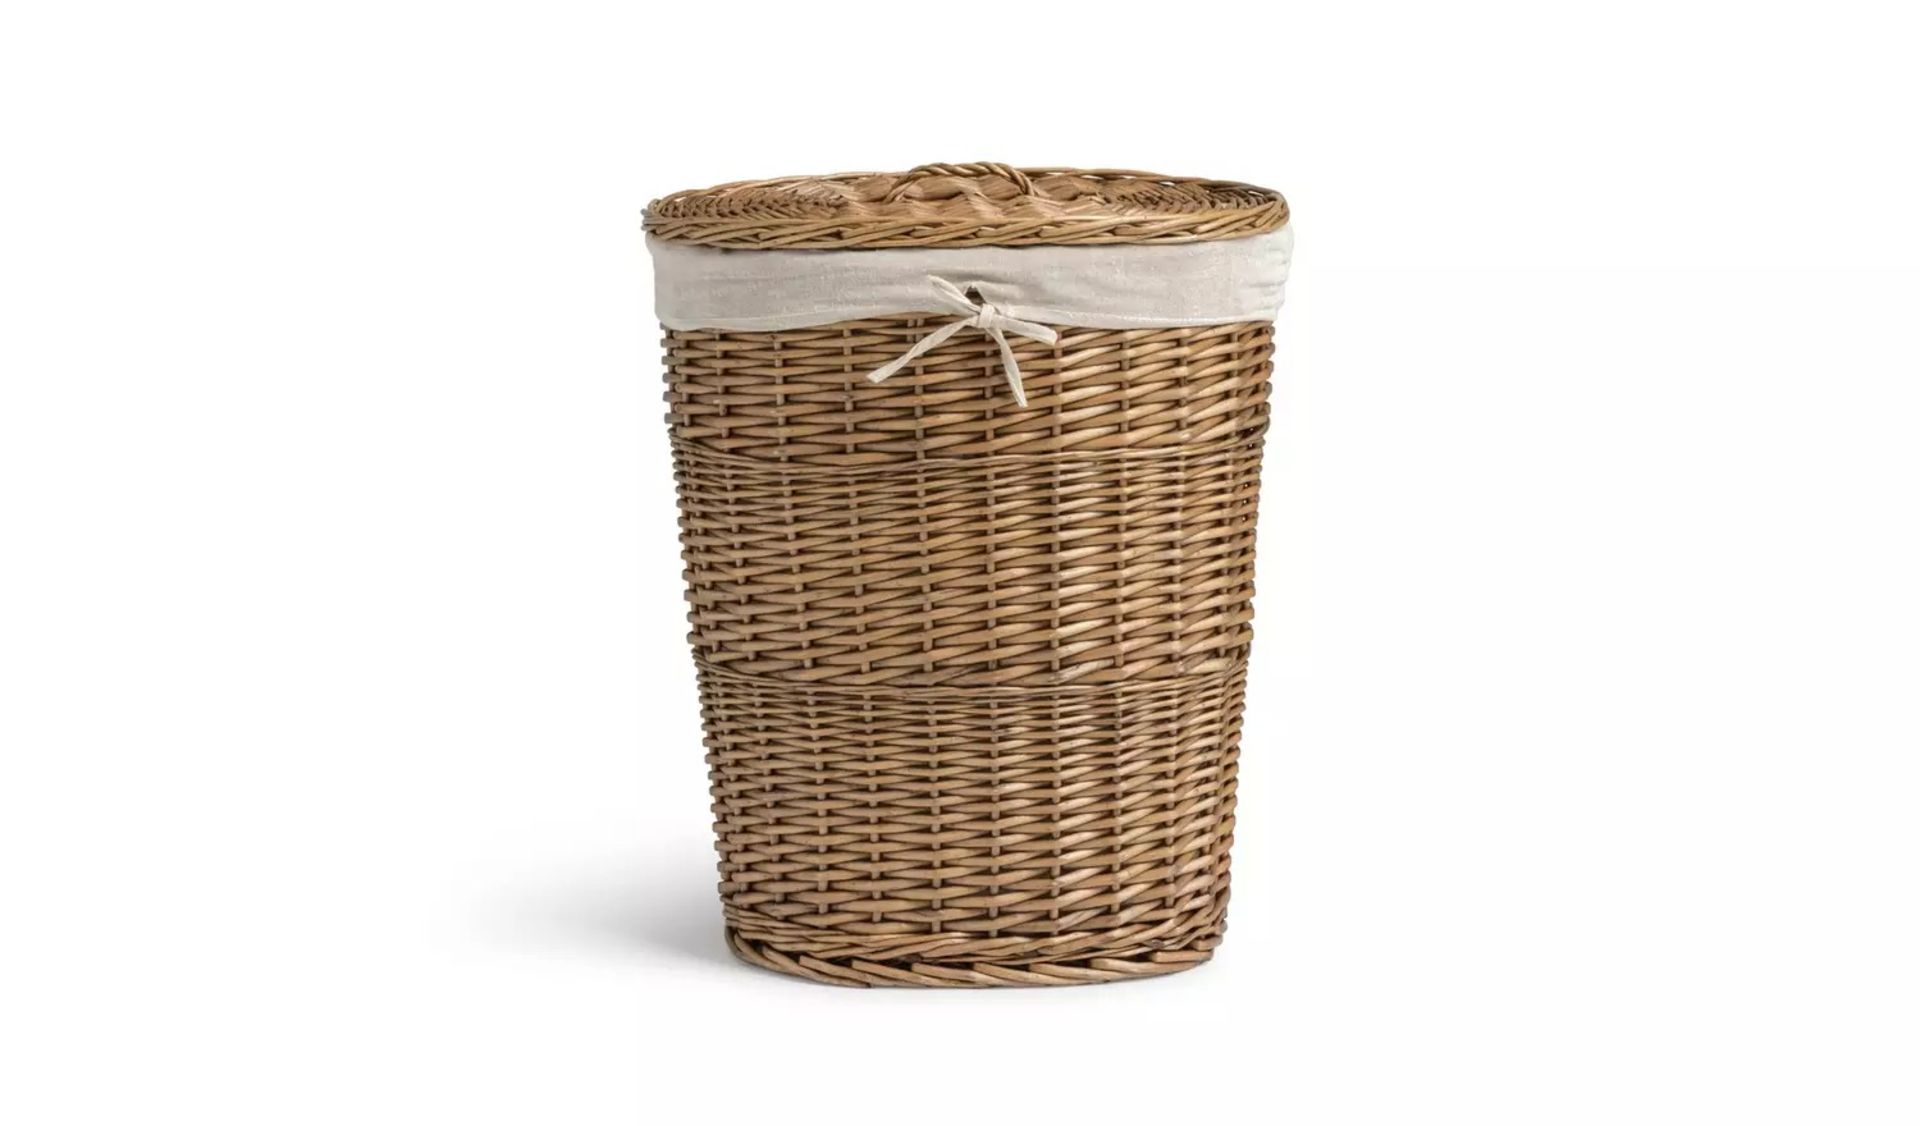 Oval Willow Linen Basket - Natural - ER46